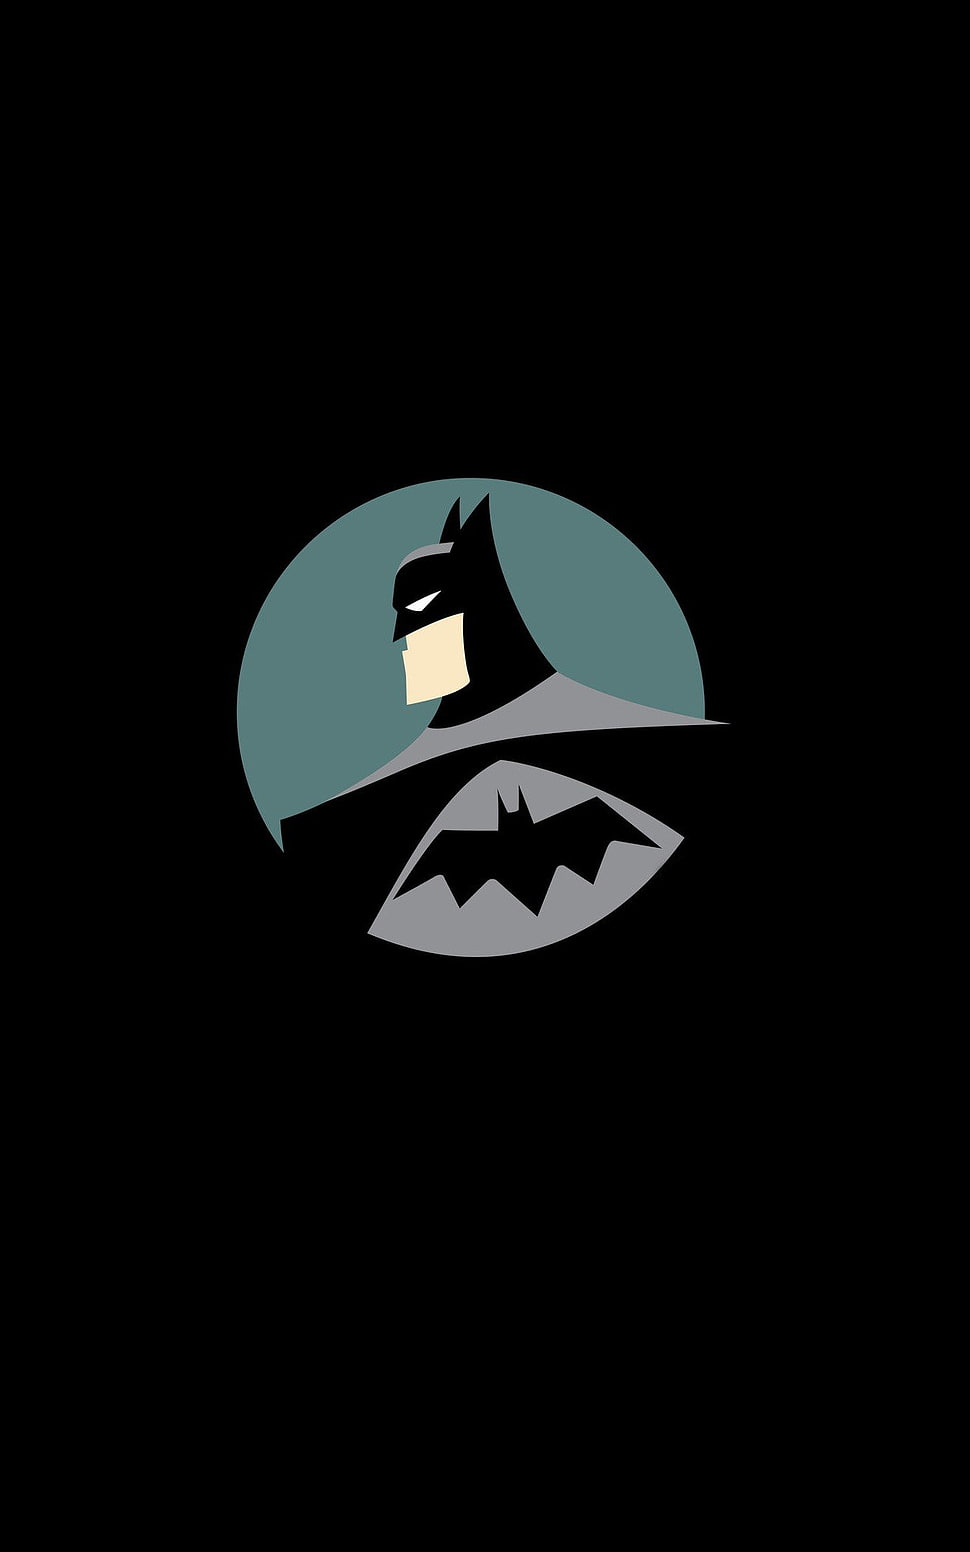 Batman illustration, Batman, DC Comics, superhero, minimalism HD wallpaper